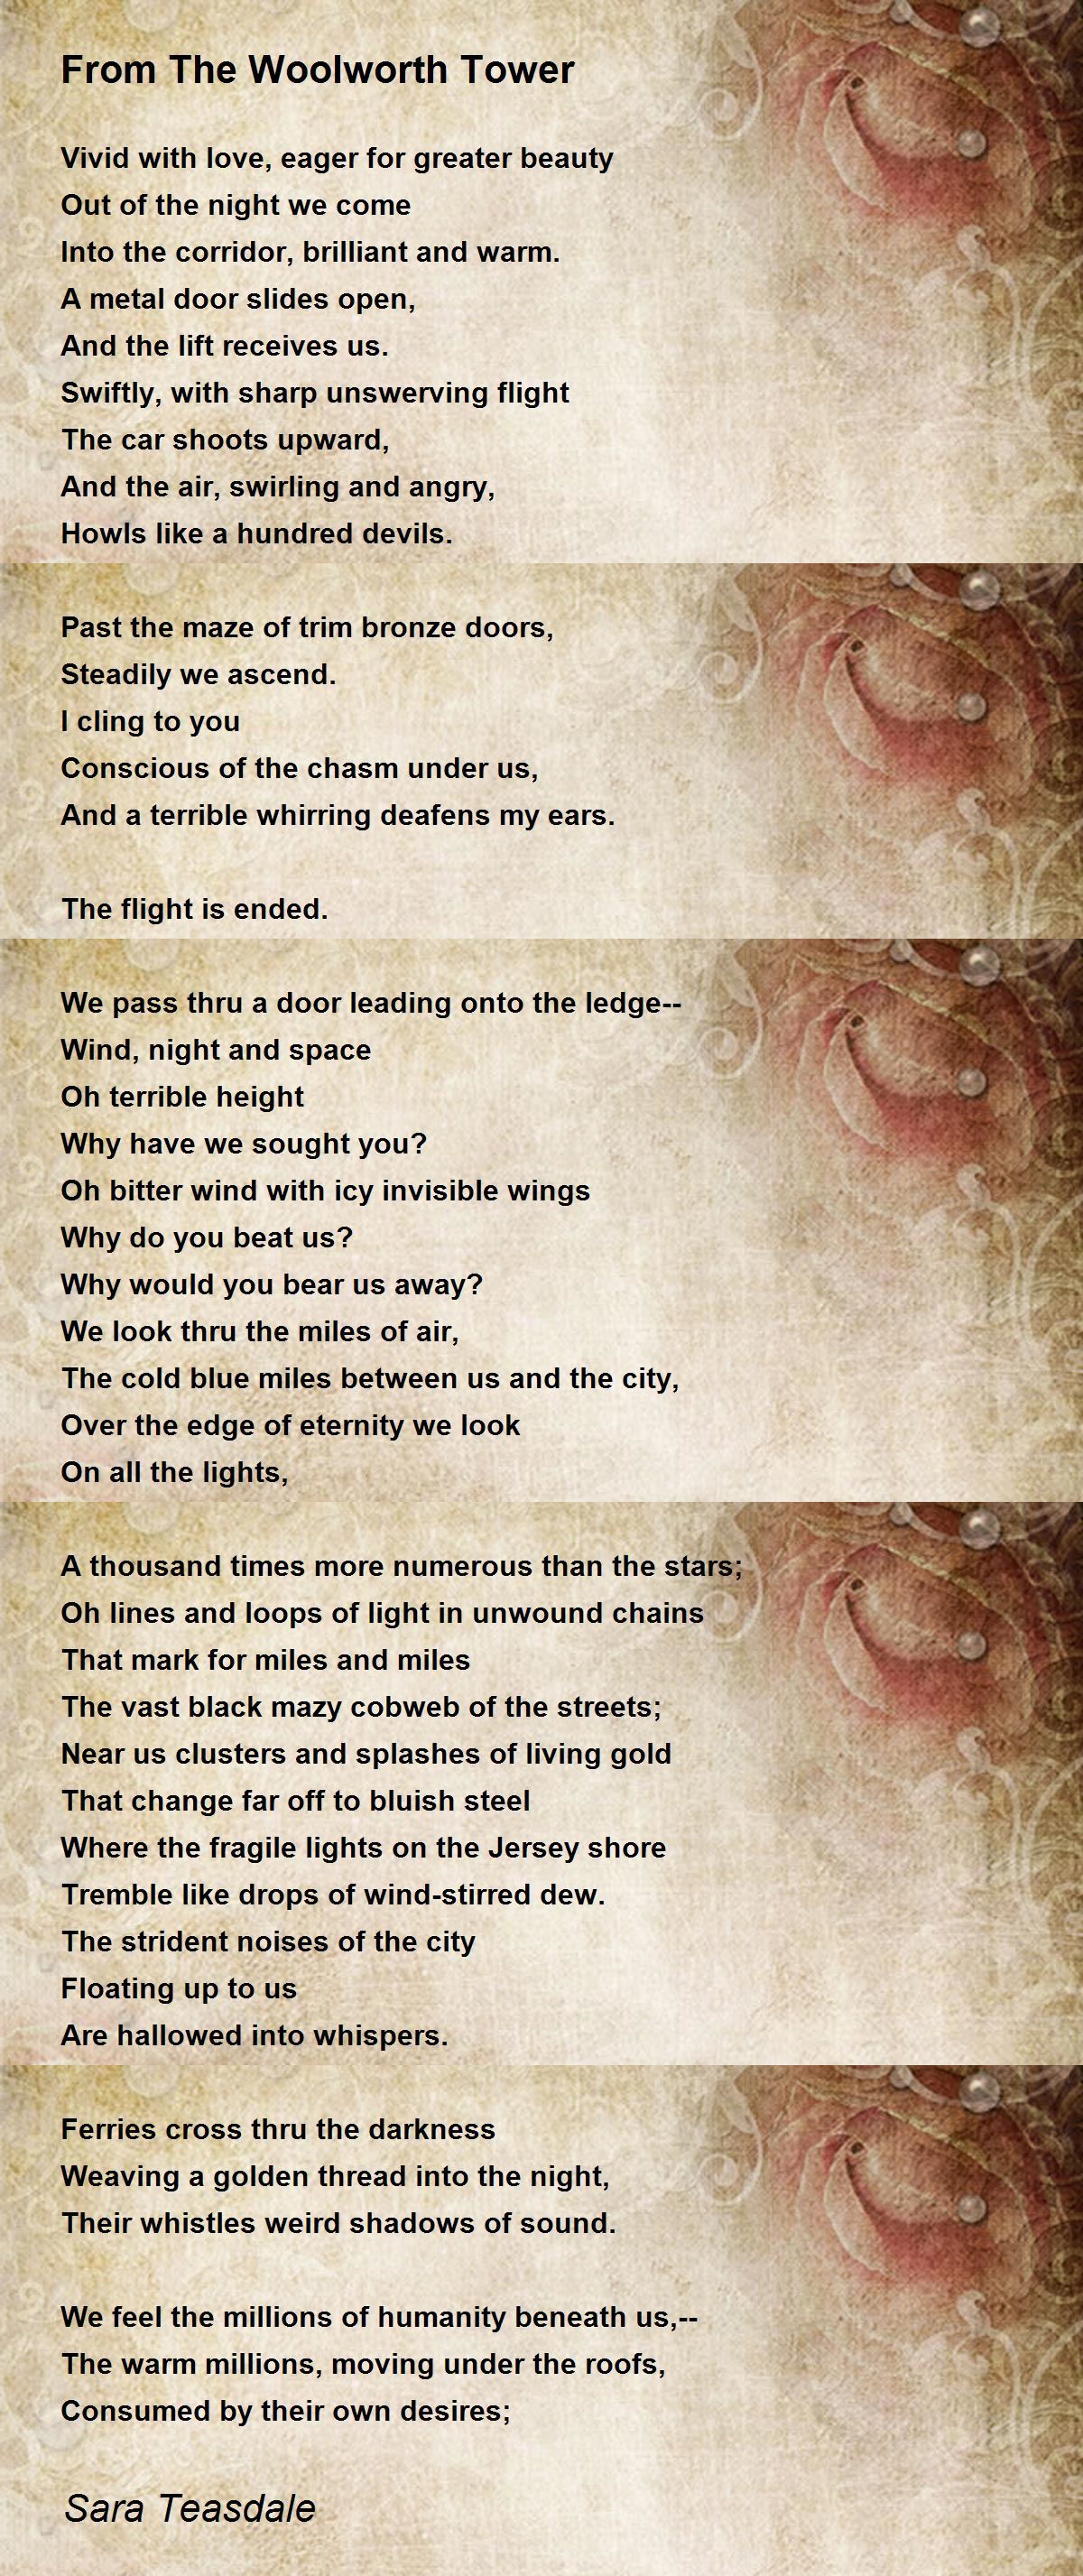 From The Woolworth Tower - From The Woolworth Tower Poem by Sara Teasdale